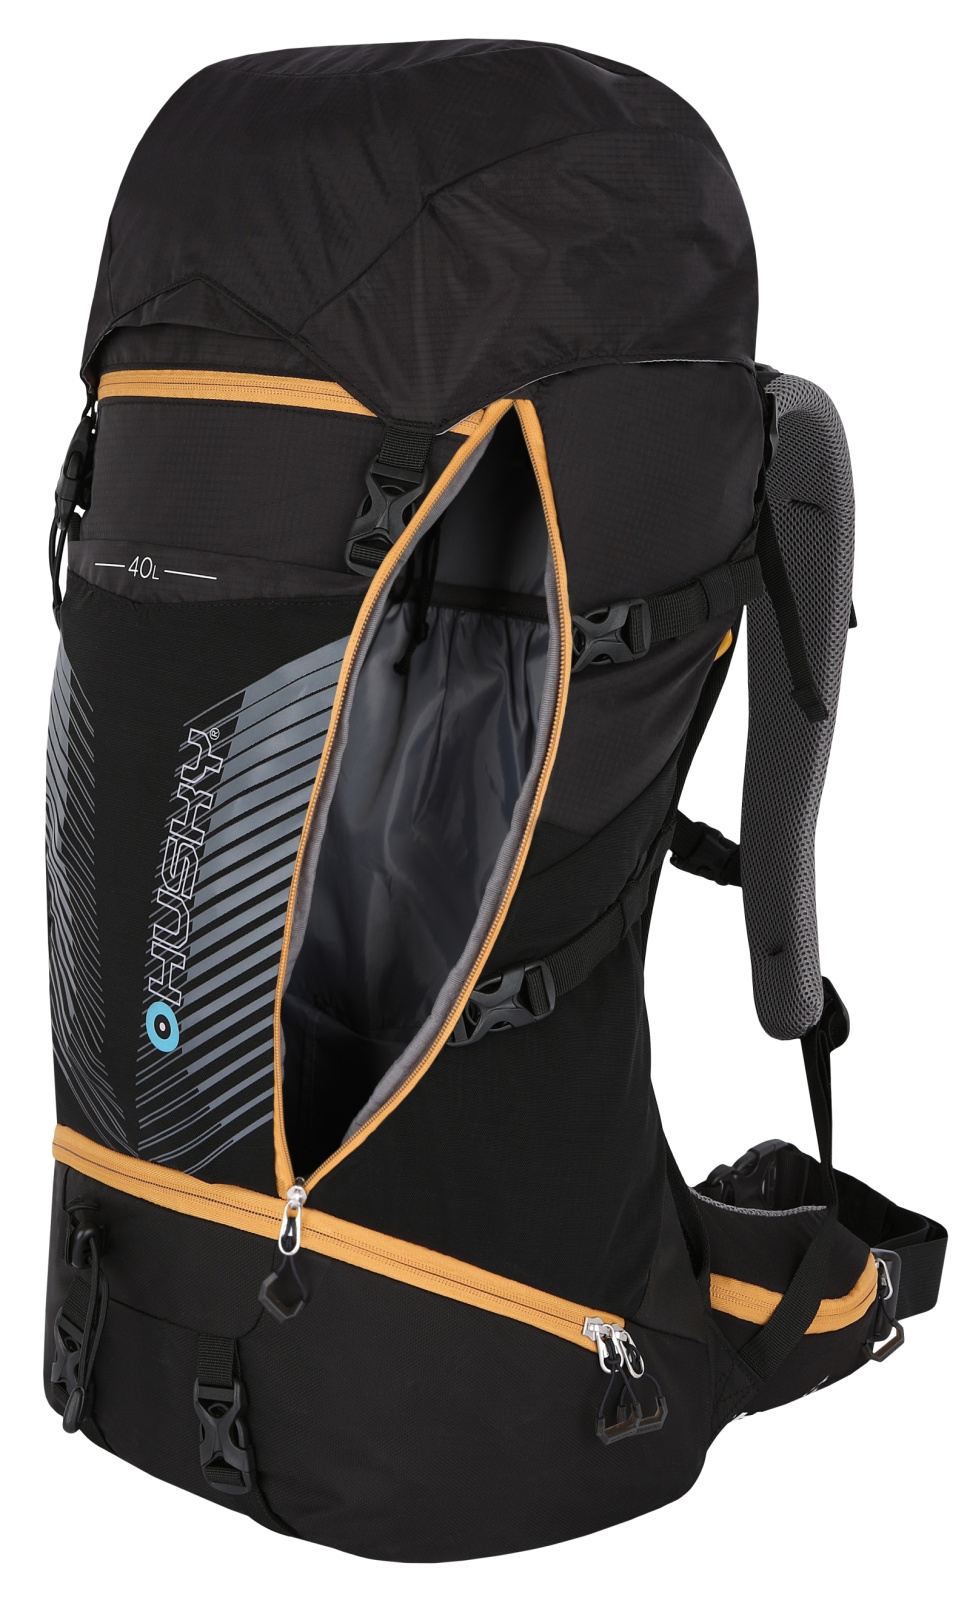 Backpack Expedition / Hiking HUSKY Capture 40l black